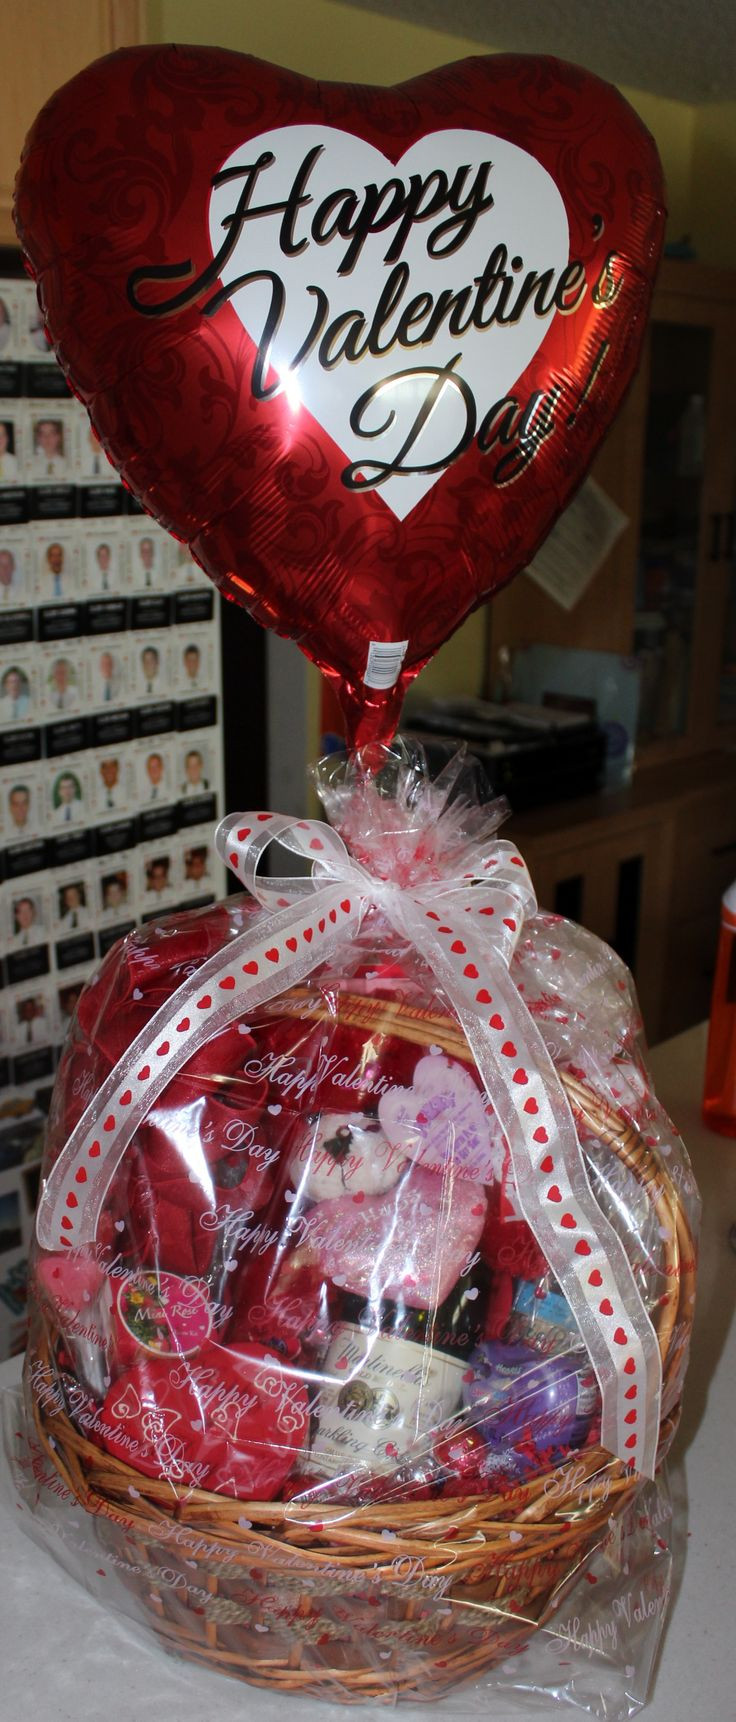 Best ideas about Valentine Gift Basket Ideas
. Save or Pin Best 25 Valentine baskets ideas on Pinterest Now.